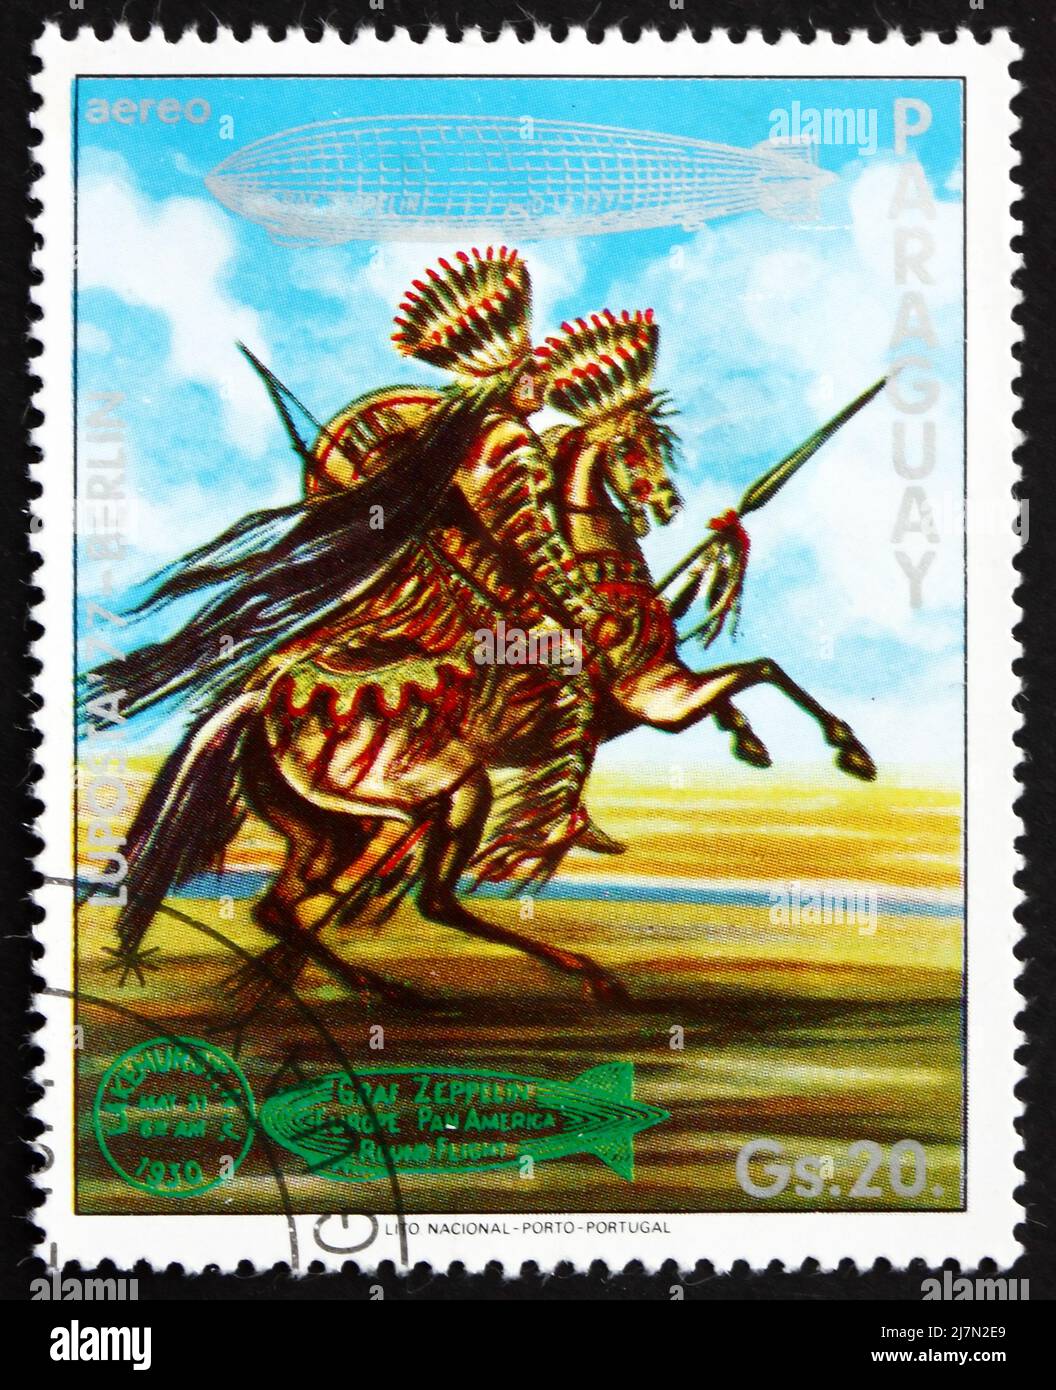 PARAGUAY - VERS 1977: Un timbre imprimé au Paraguay montre Indian on Horse, US, Graf Zeppelin 1st South America Flight, vers 1977 Banque D'Images